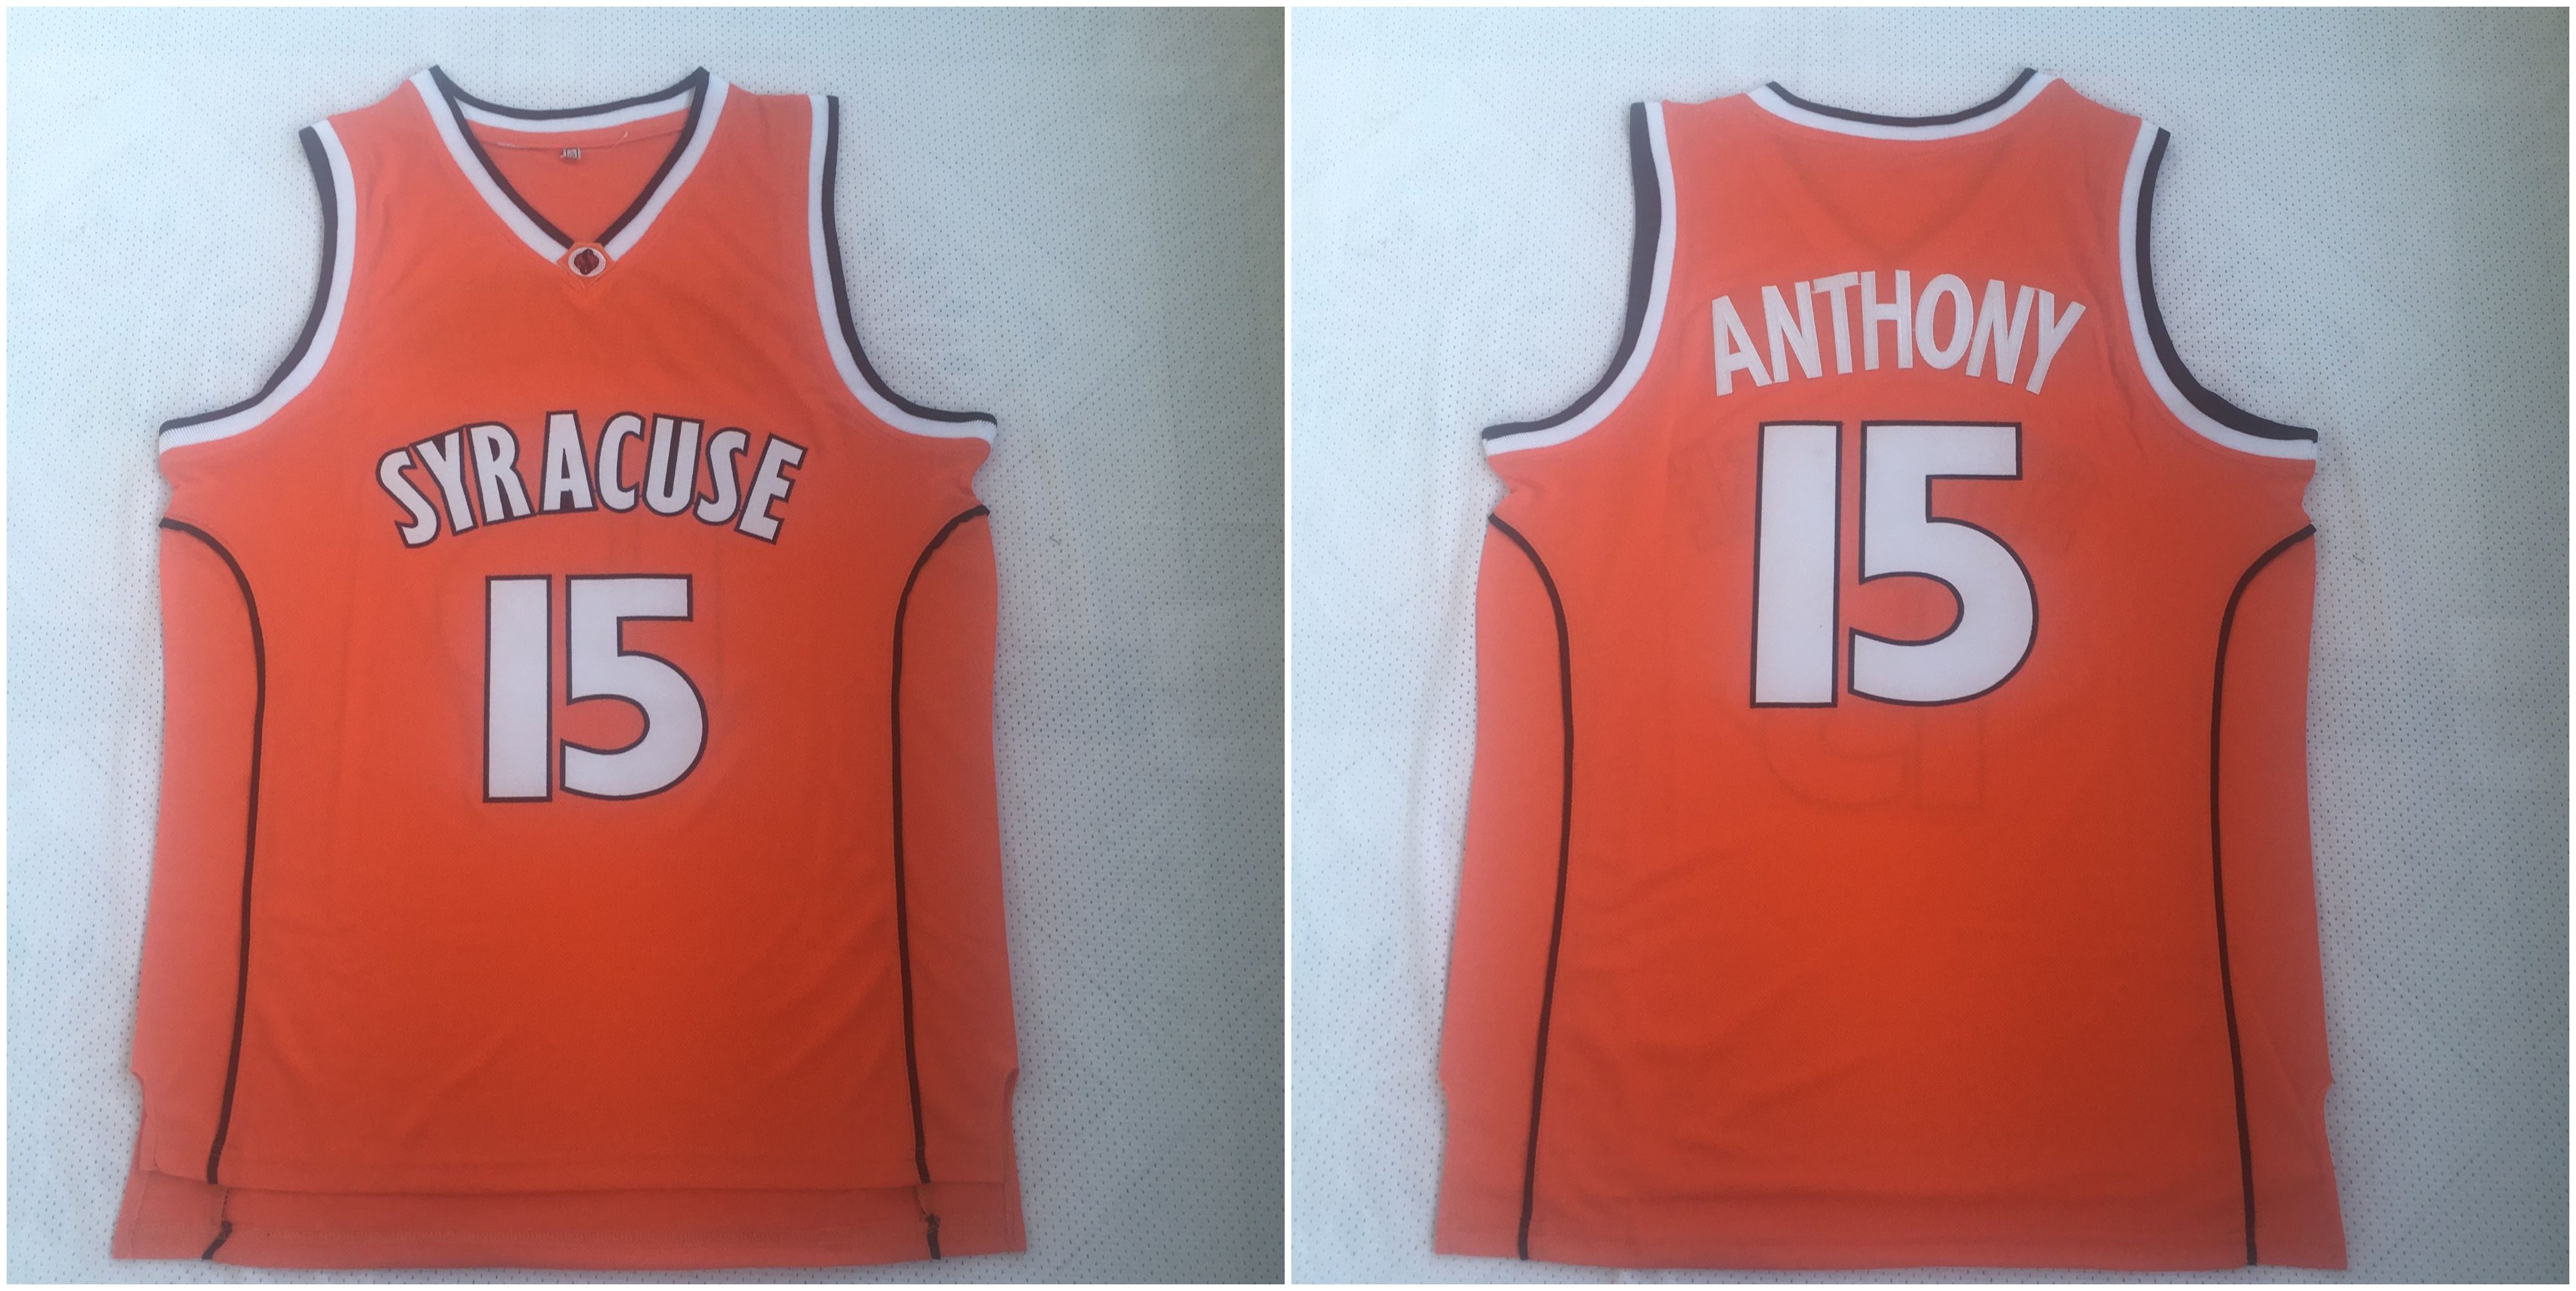 Syracuse University 15 Carmelo Anthony Orange Basketball College Jersey